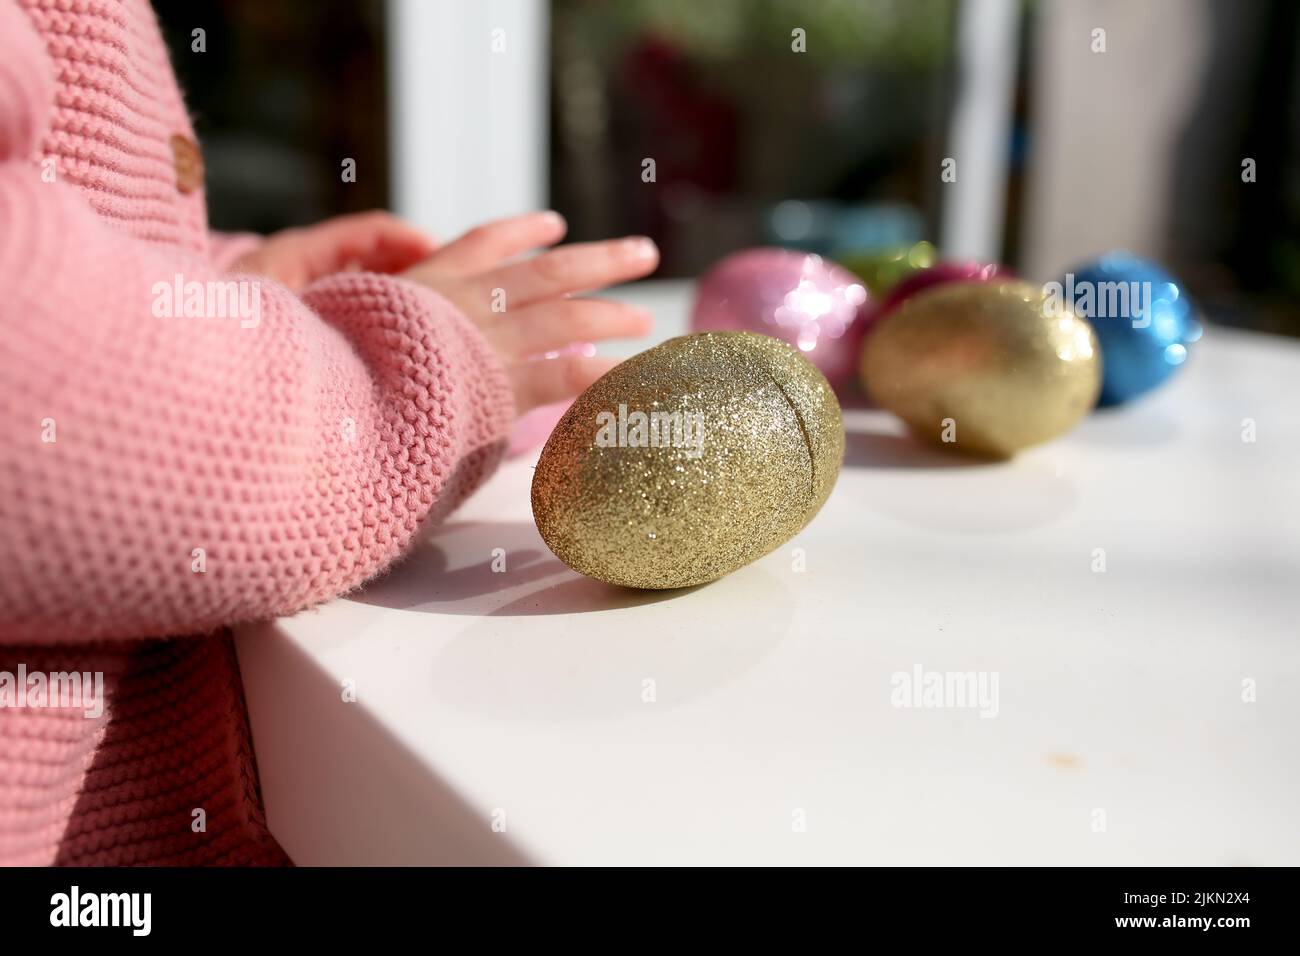 Una mano per bambini accanto a colorate uova di Pasqua sul tavolo Foto Stock